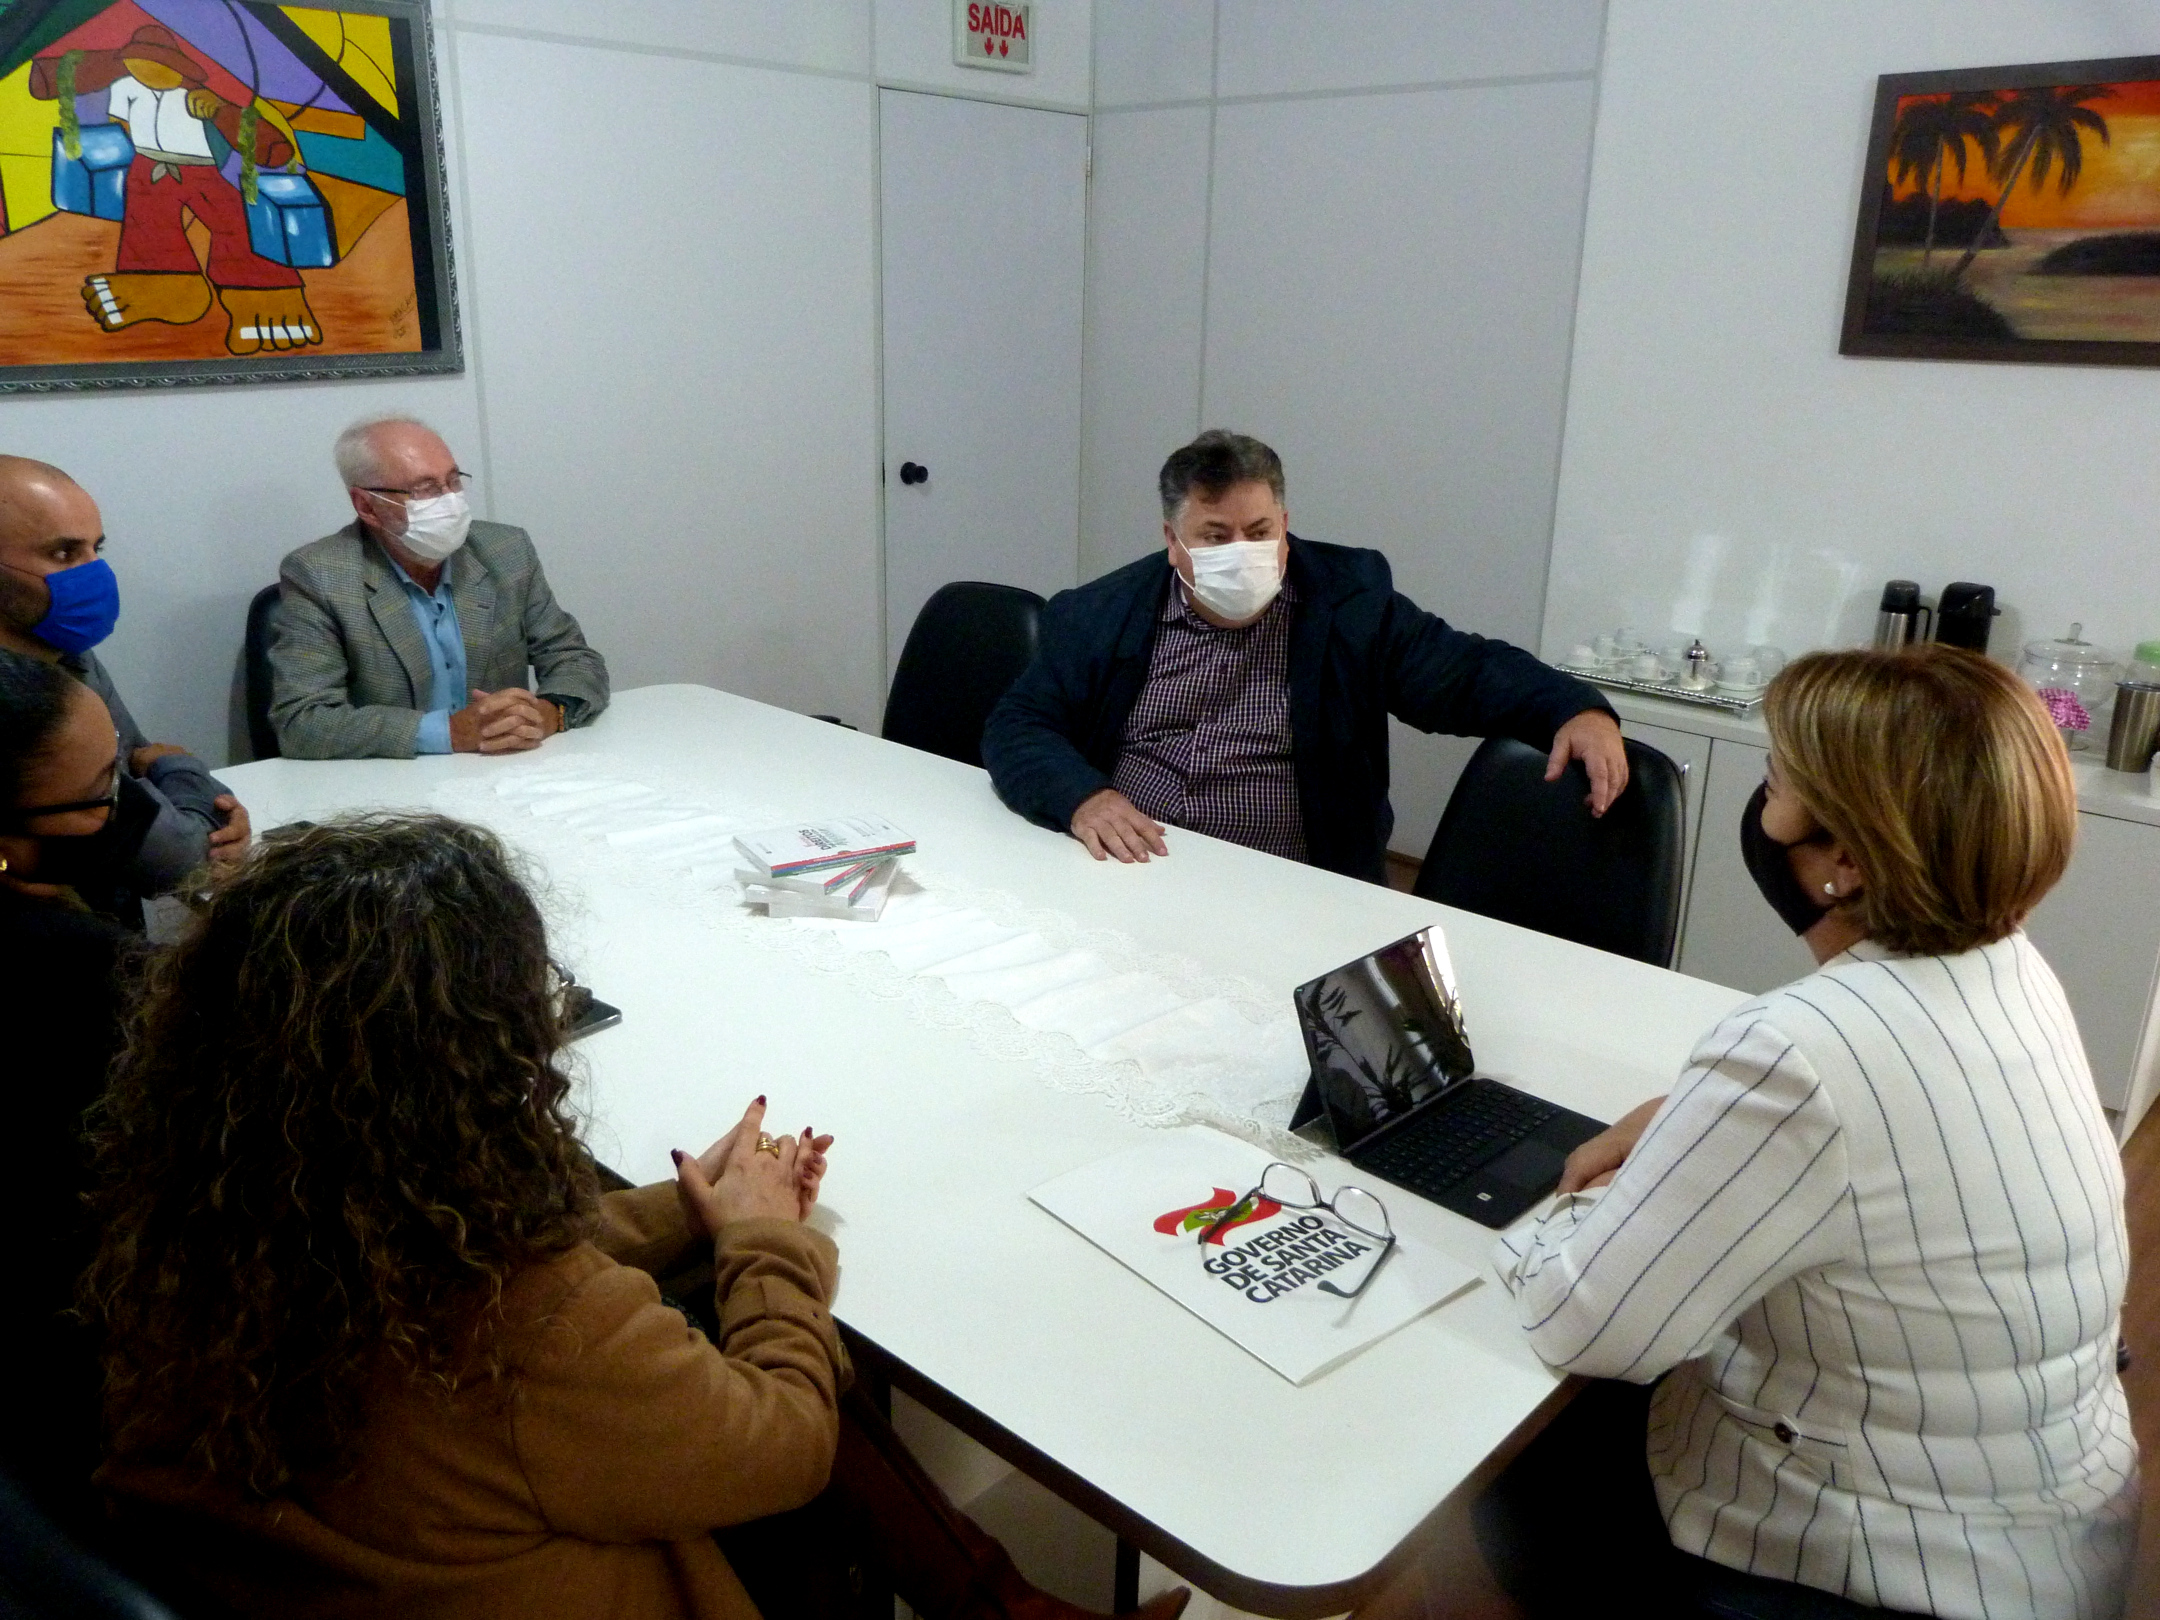 Ambiente interno, mesa de reuniões, sete pessoas sentadas, de máscara